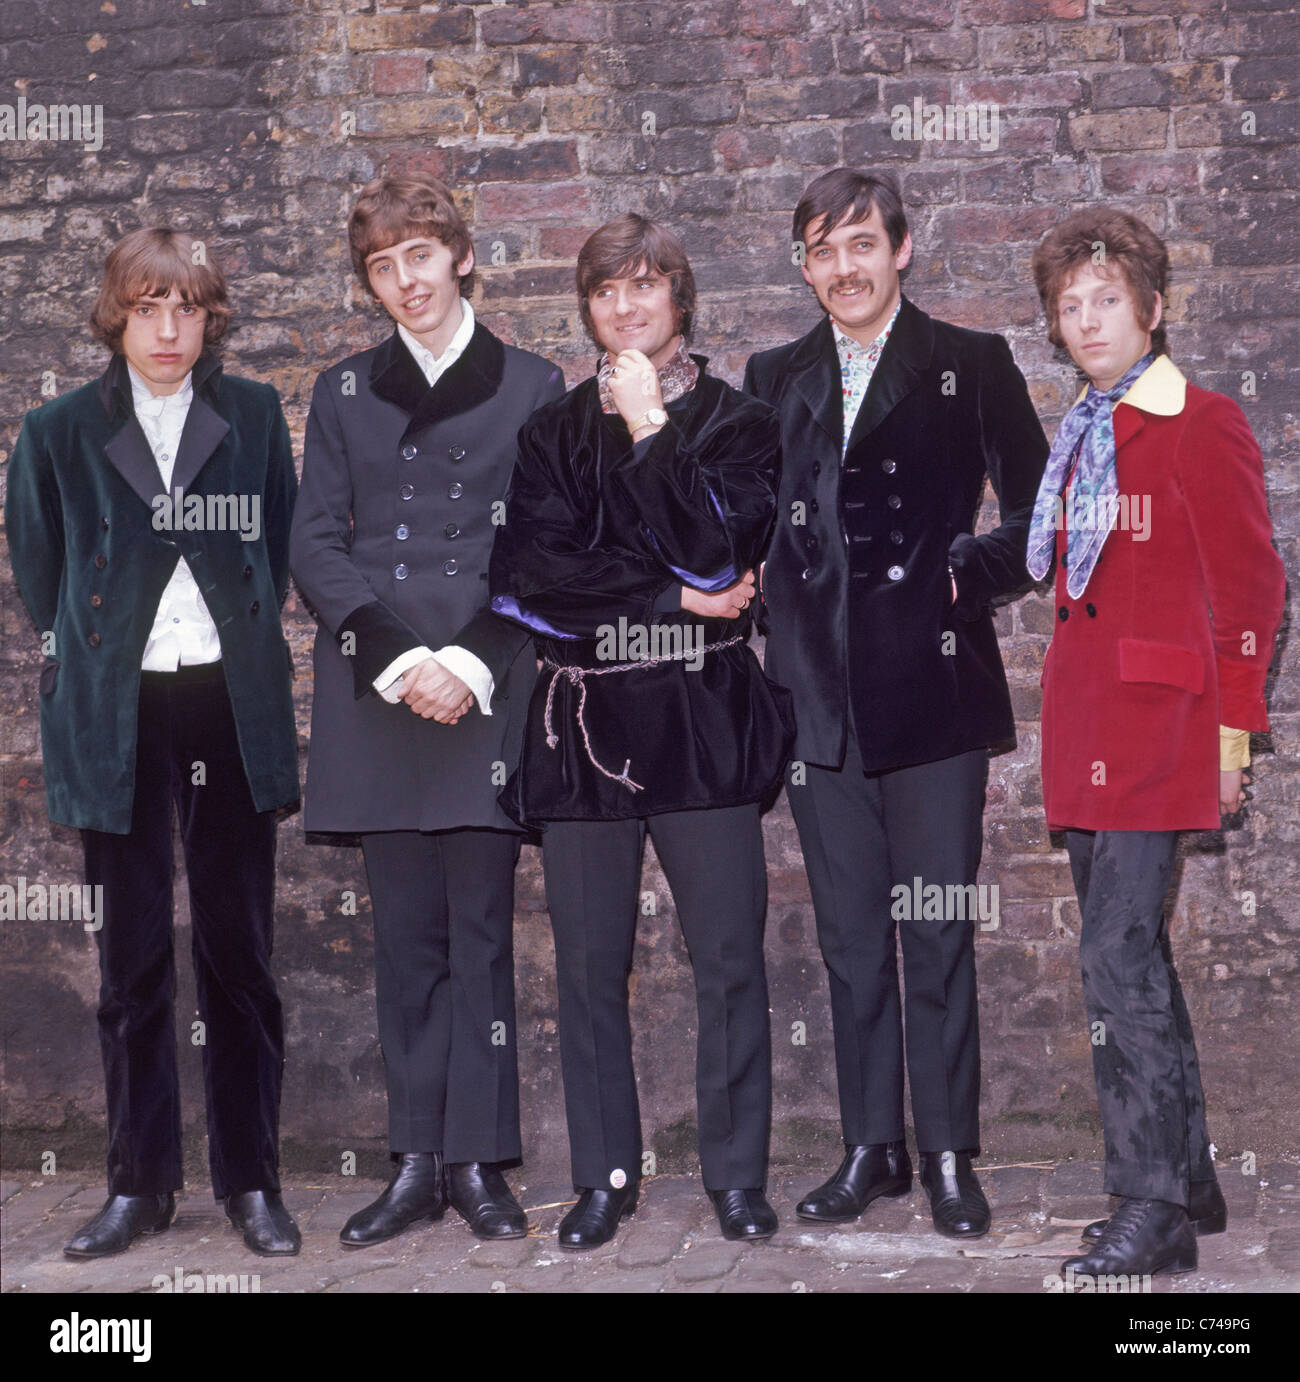 PROCOL HARUM groupe pop britannique en mai 1967, lorsqu'ils ont sorti A Whiter Shade of Pale - noms dans la description ci-dessous. Photo Tony Gale Banque D'Images